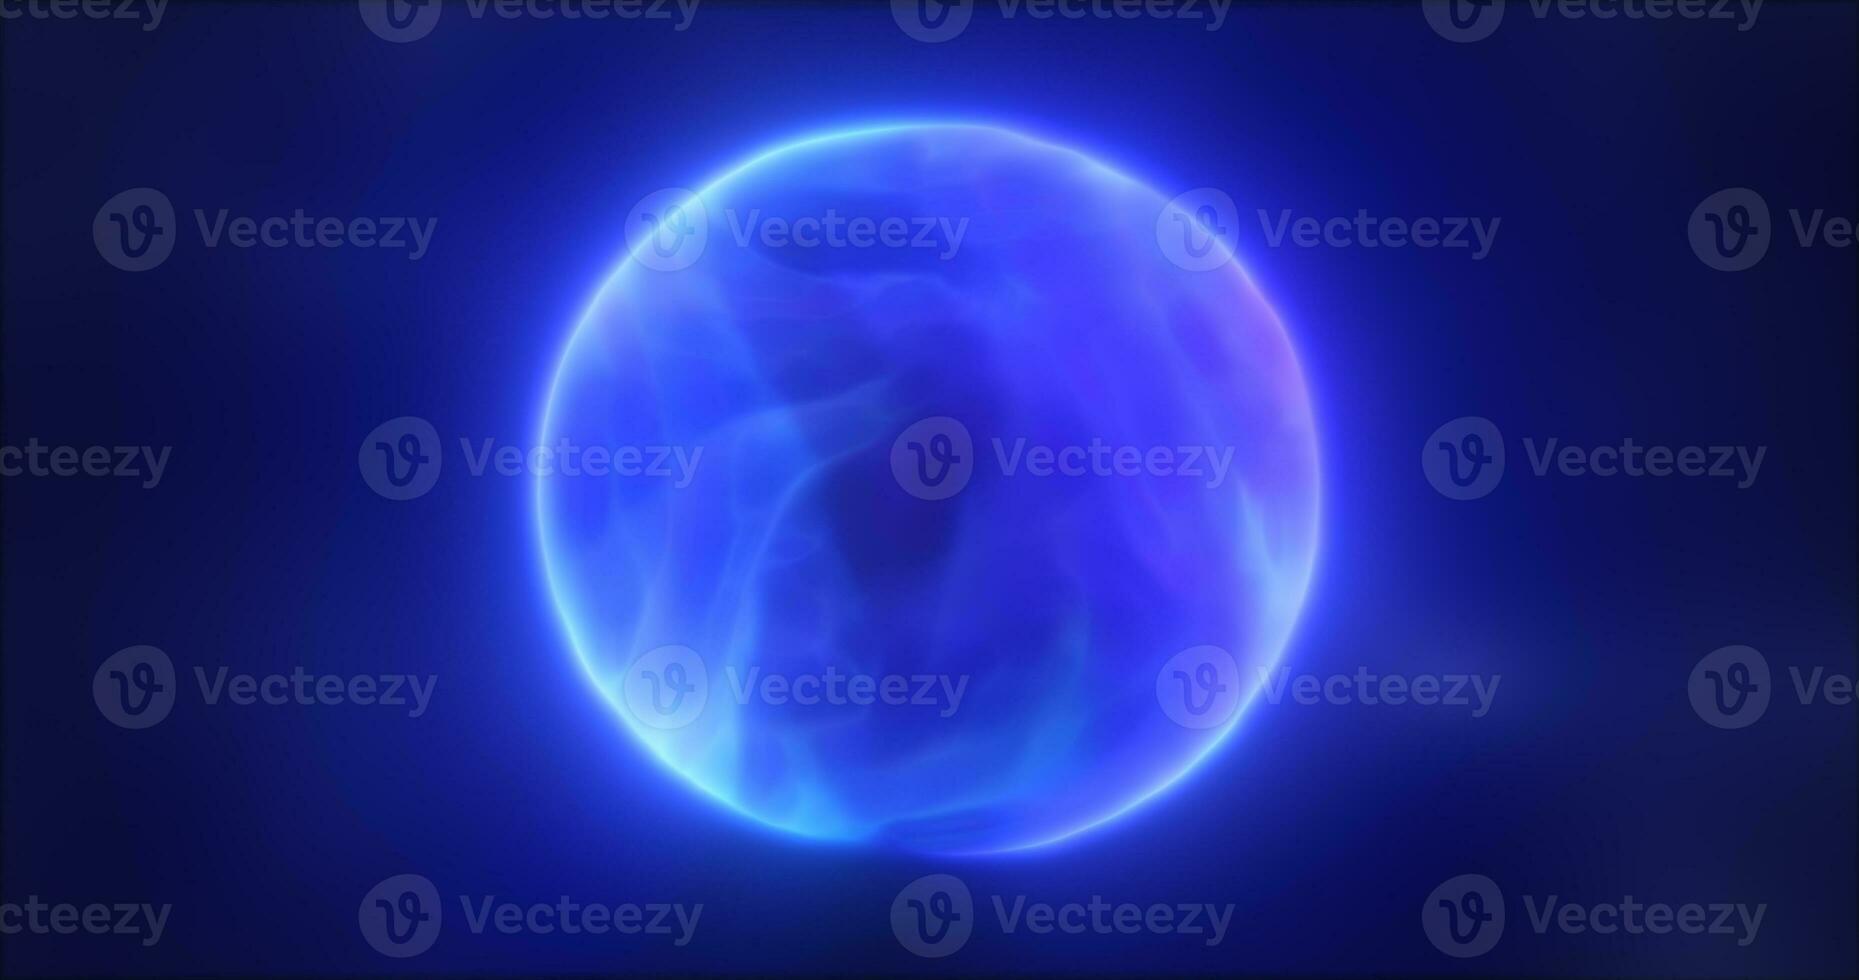 resumen azul energía esfera redondo brillante mágico digital futurista espacio antecedentes foto